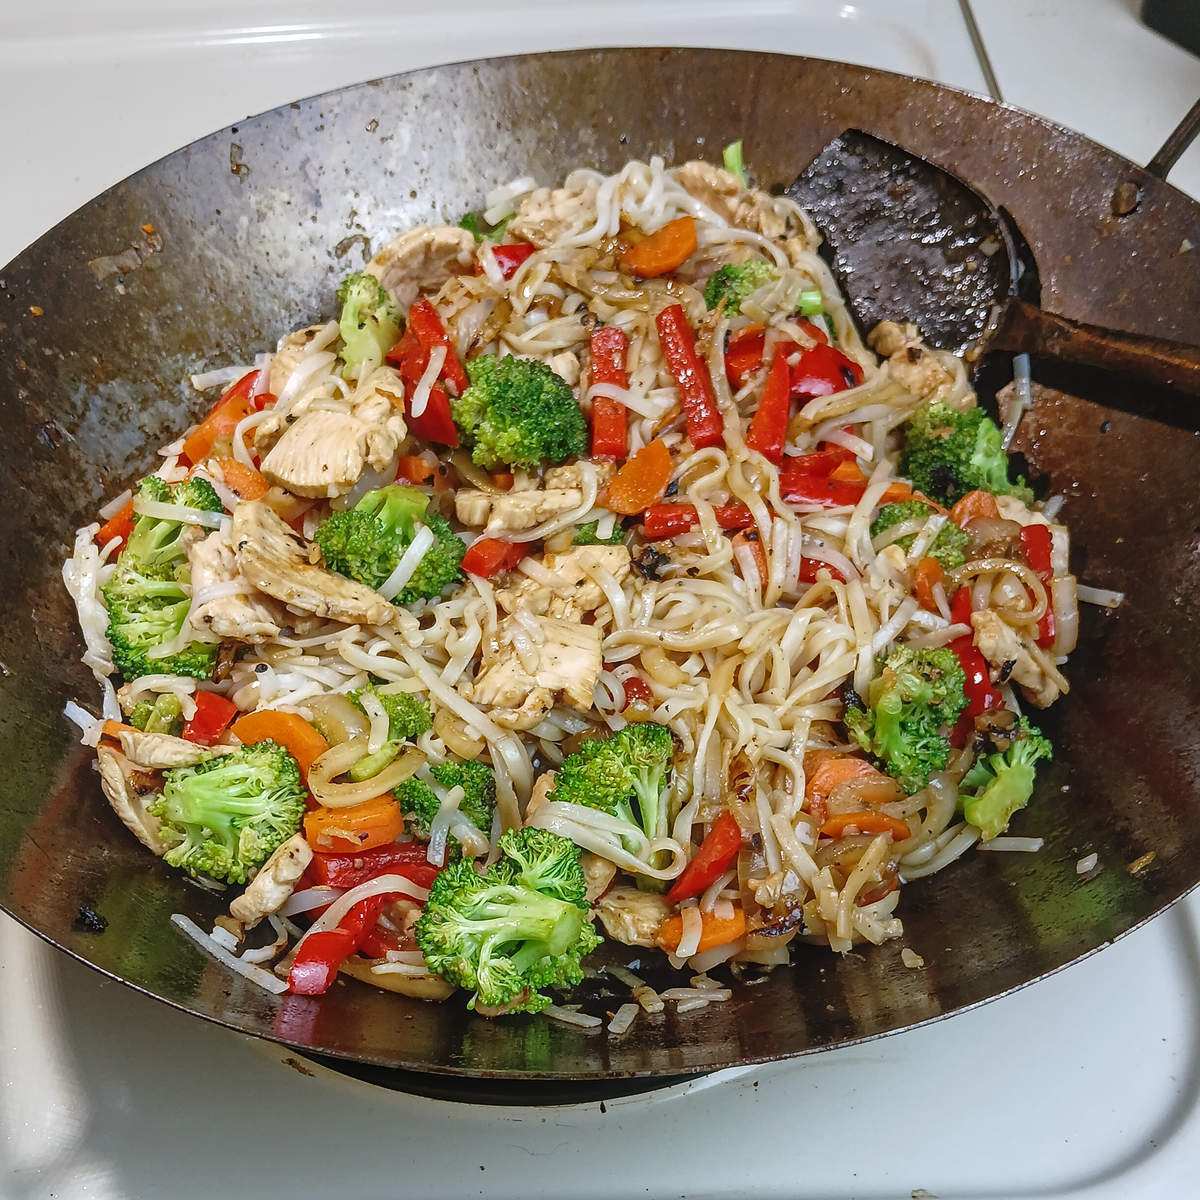 Low sodium chicken stir fry final cook in wok.